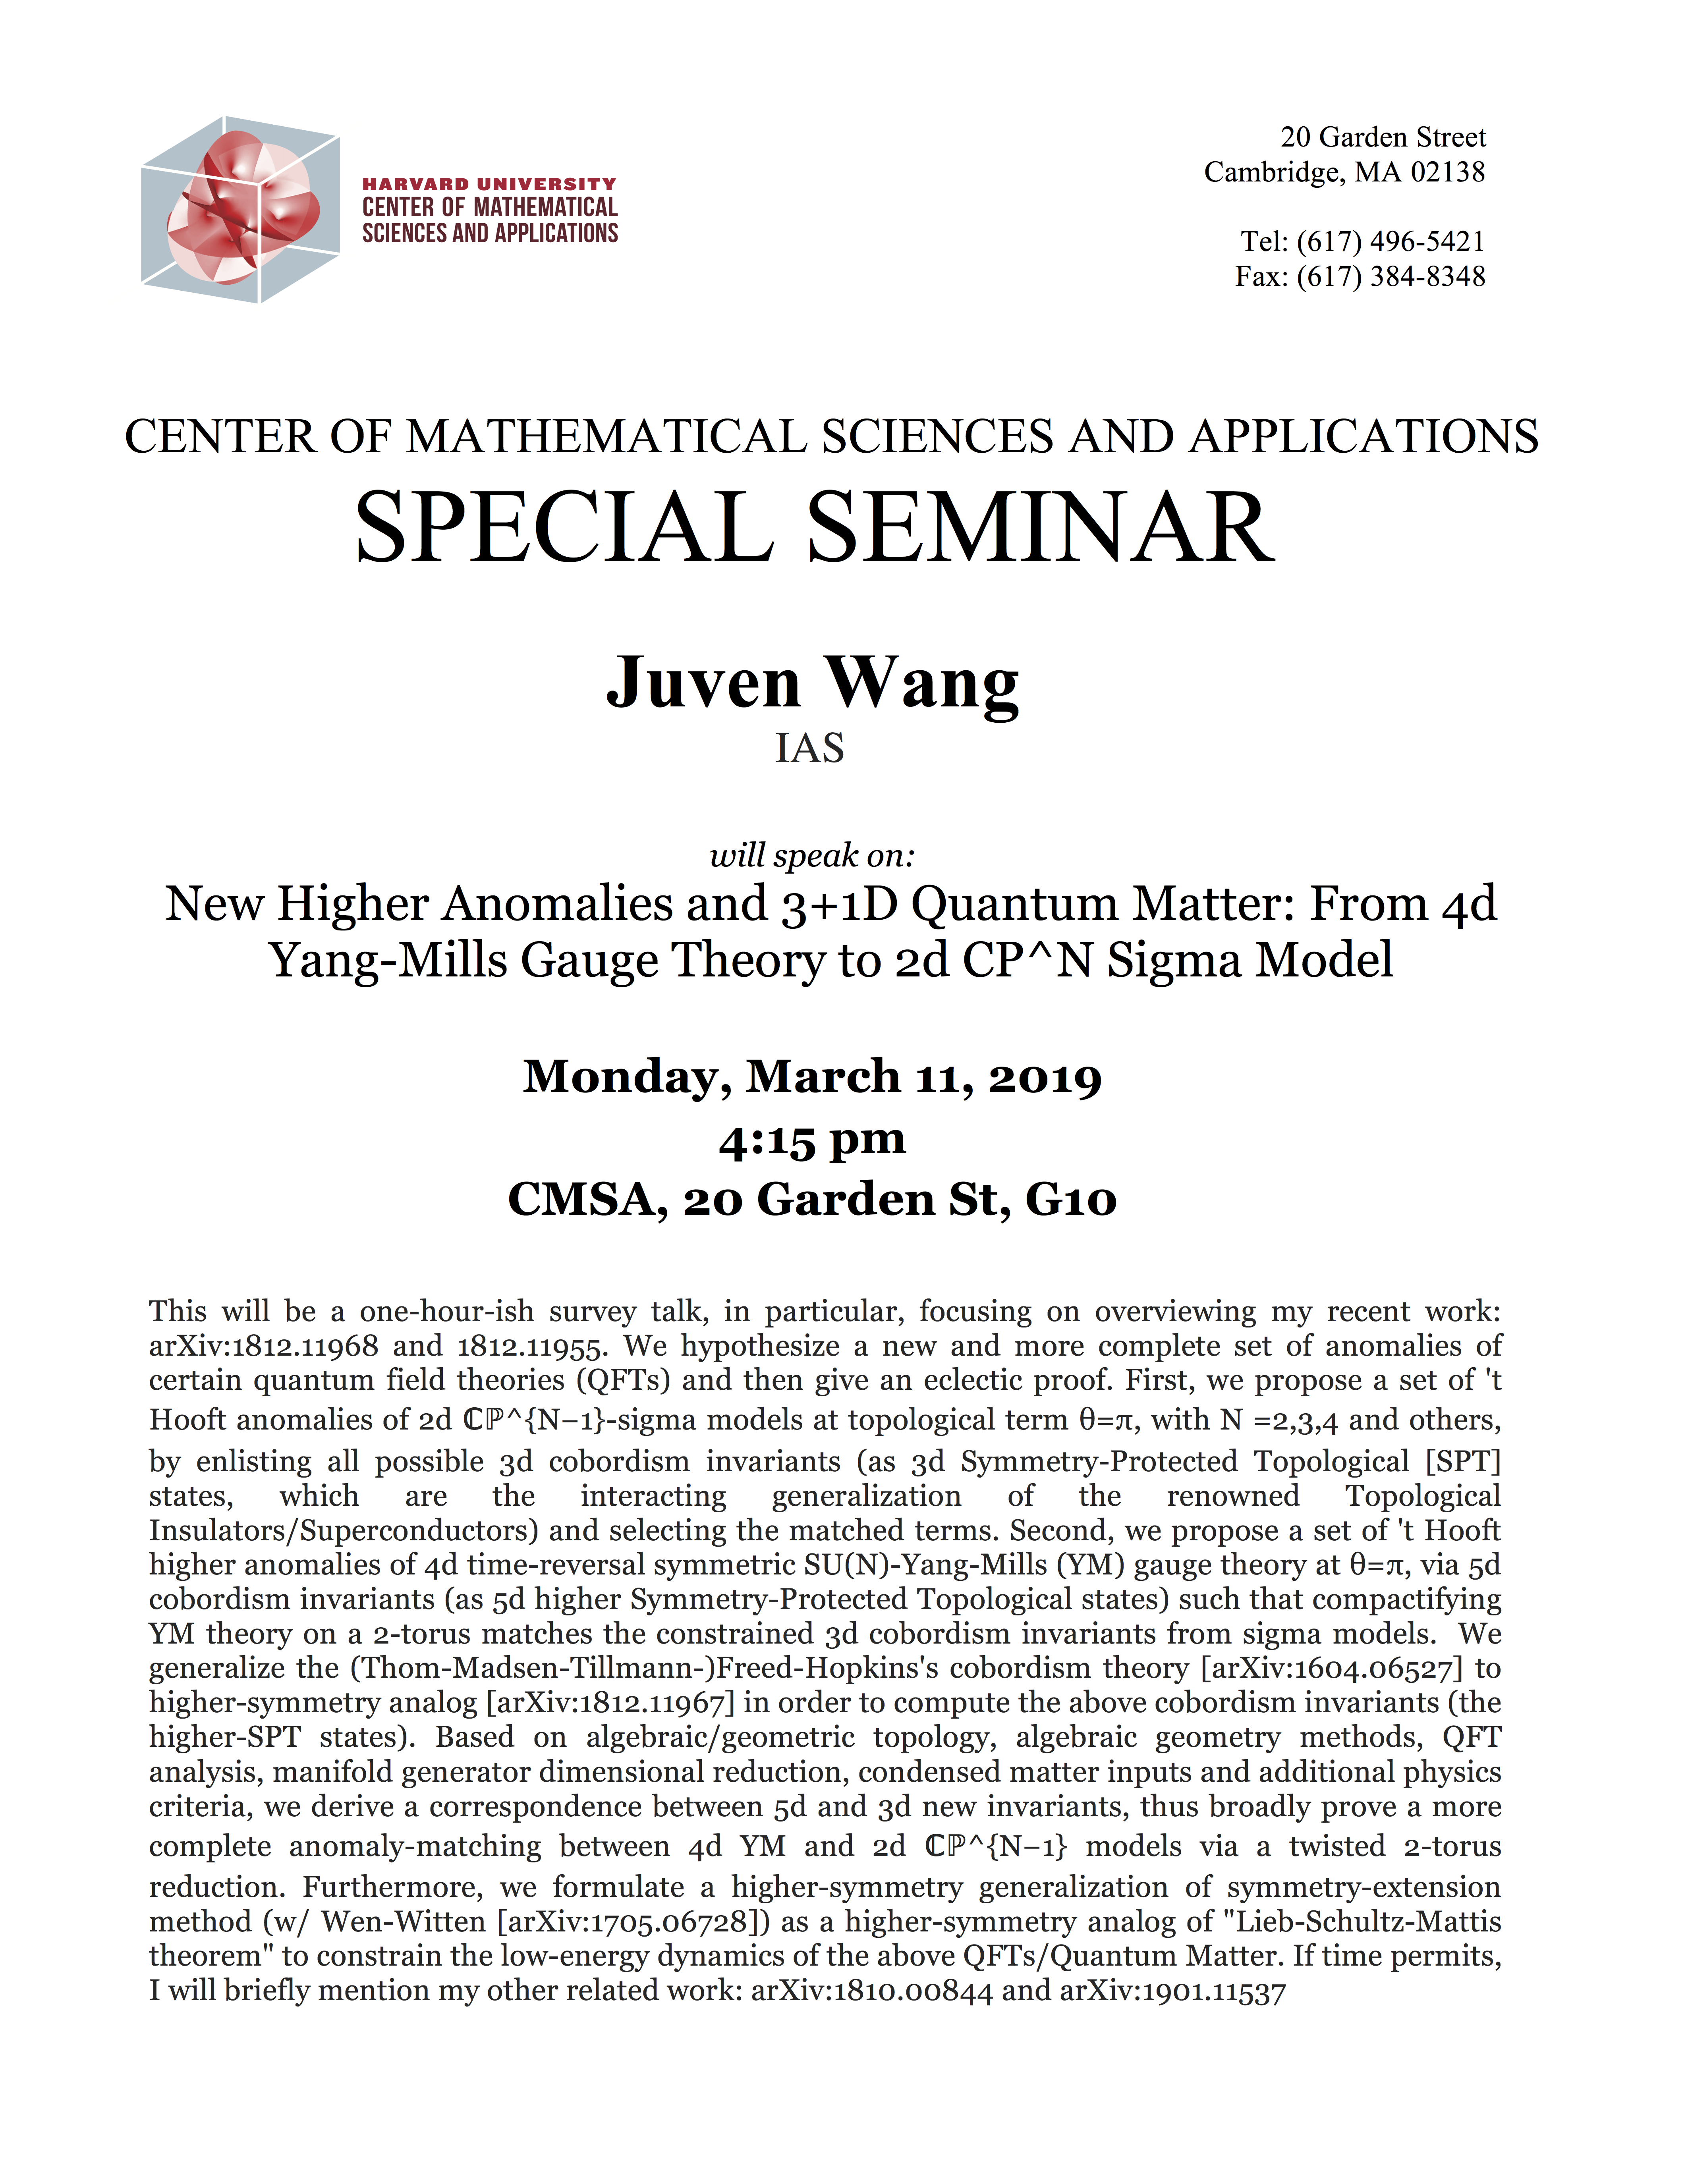 3/11/2019 Special Seminar